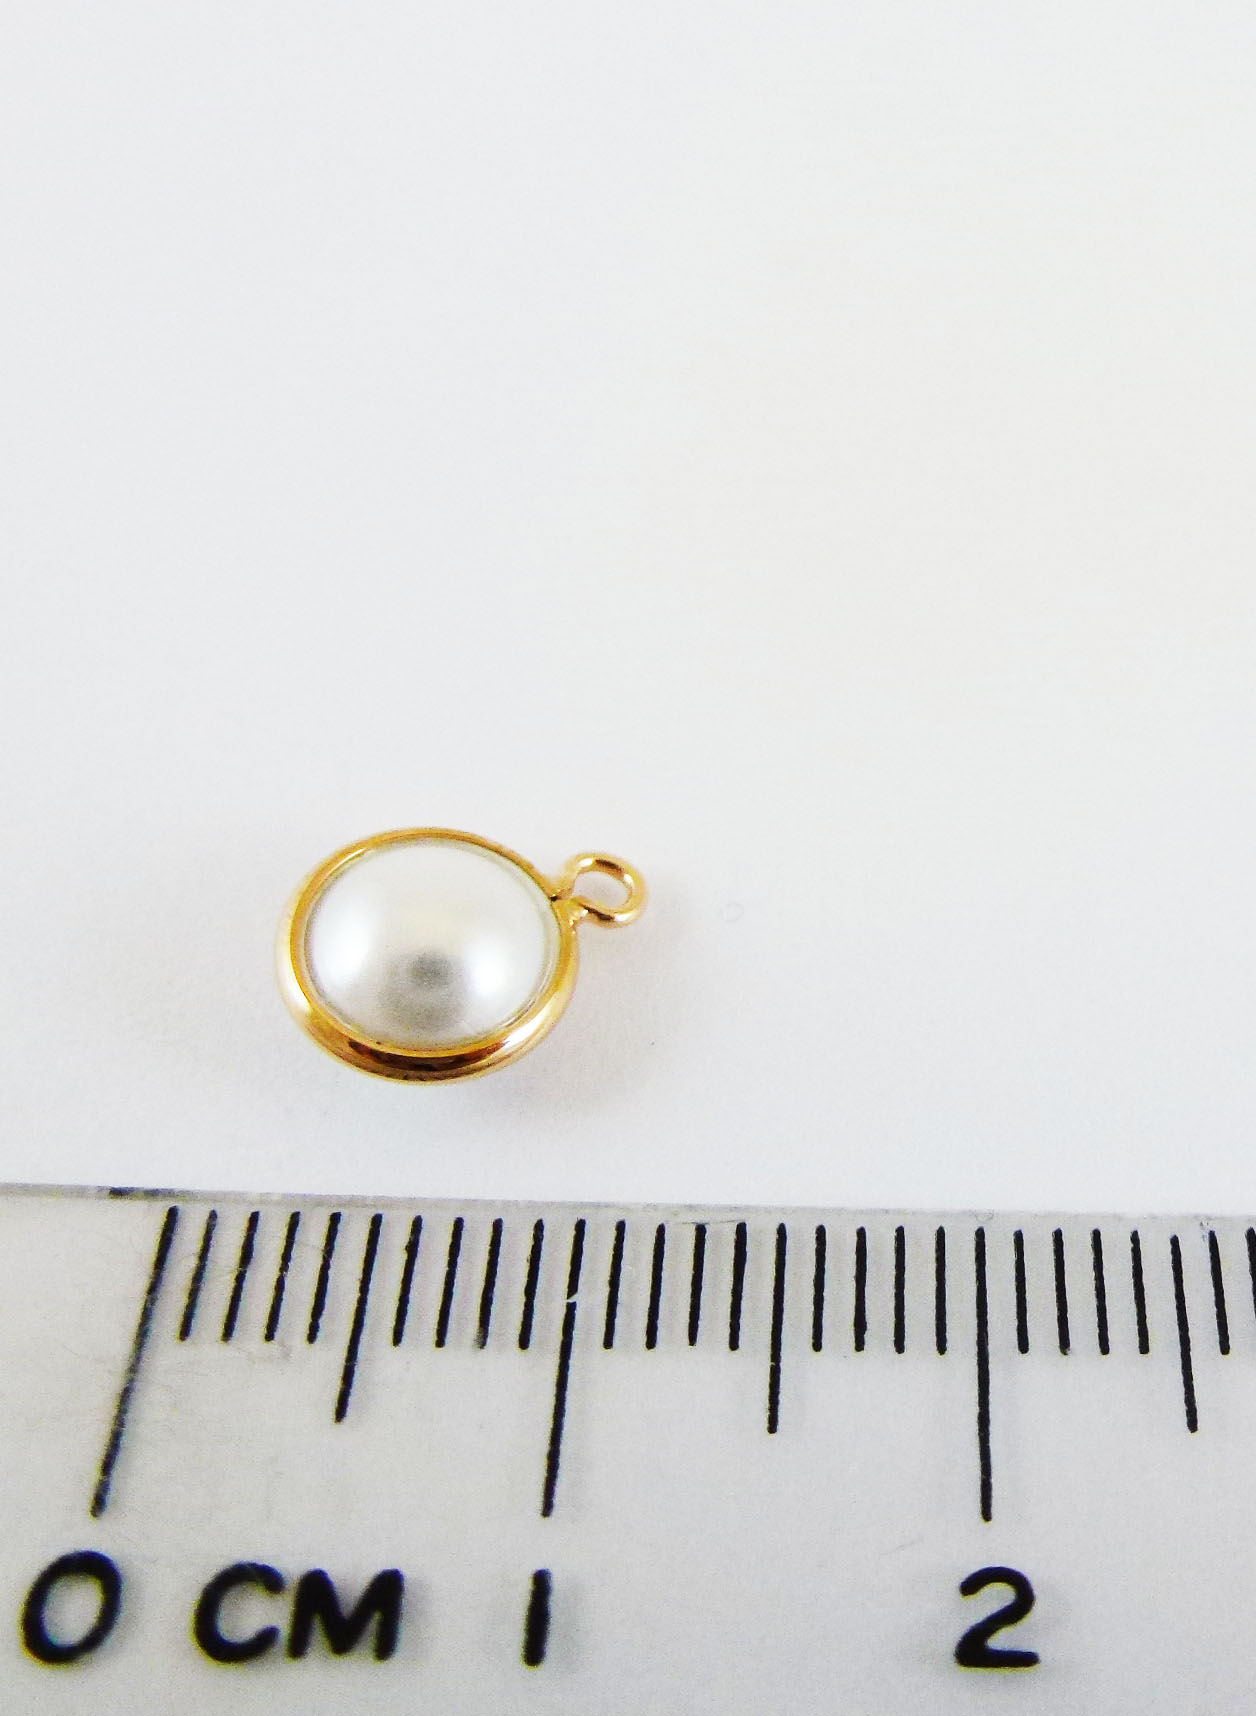 8mm銅鍍玫瑰金單孔圓扁珠-白色